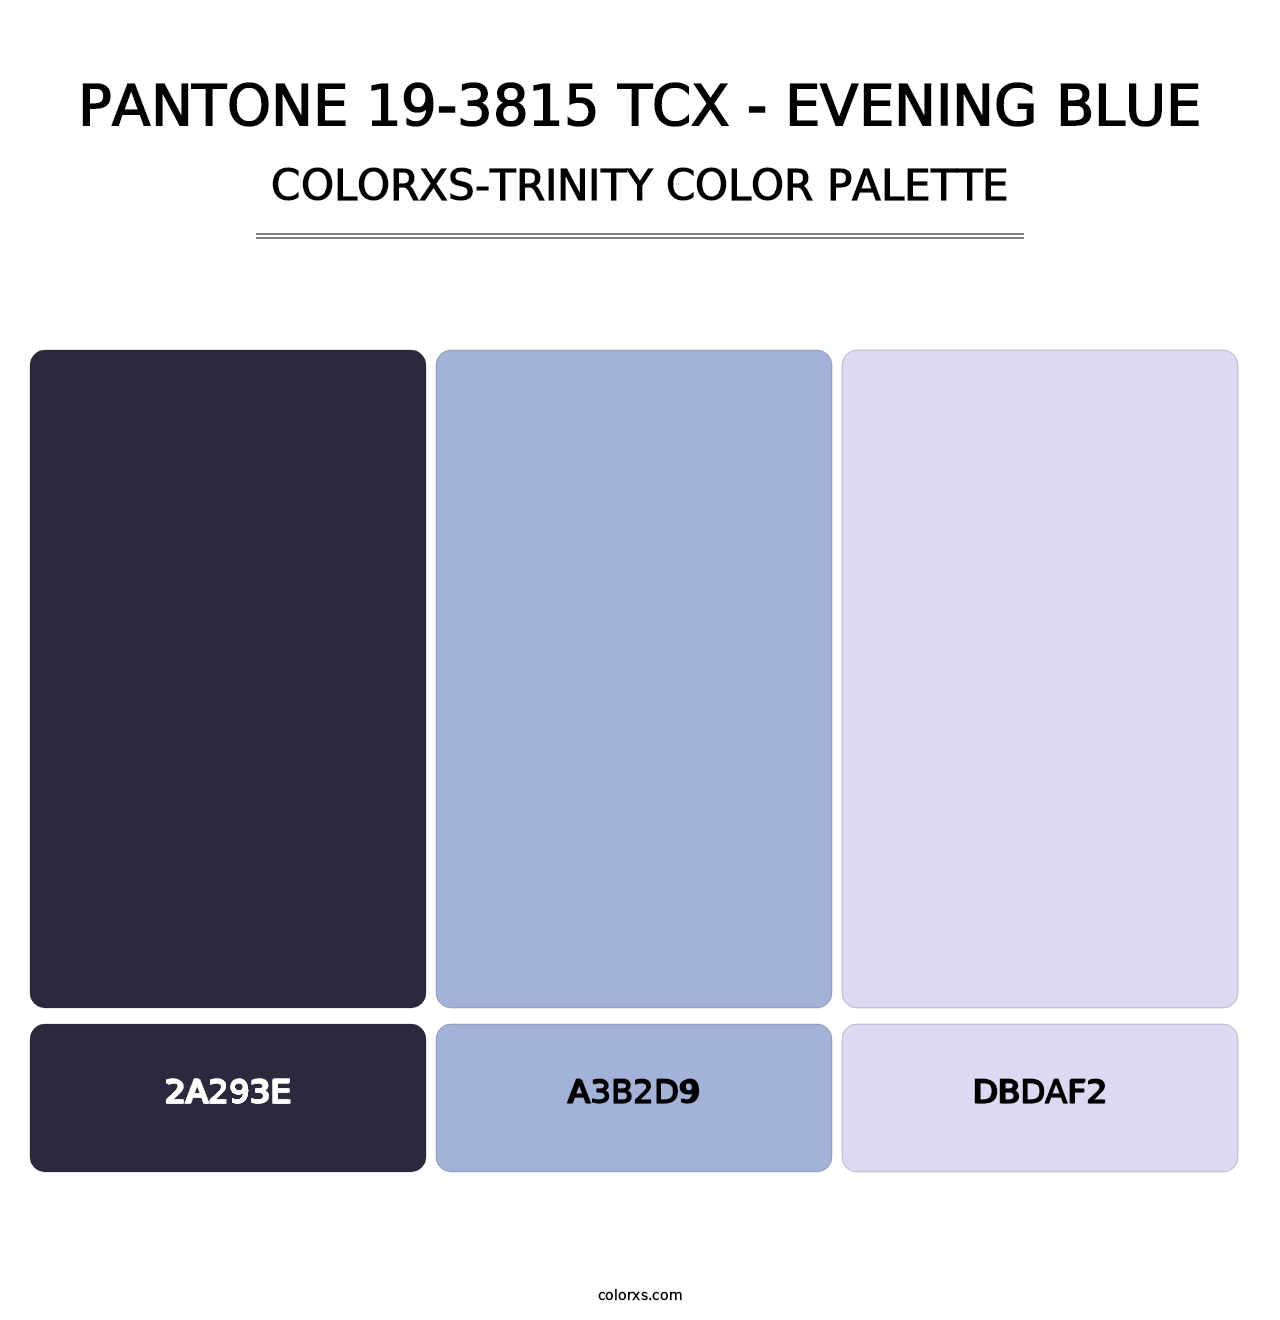 PANTONE 19-3815 TCX - Evening Blue - Colorxs Trinity Palette